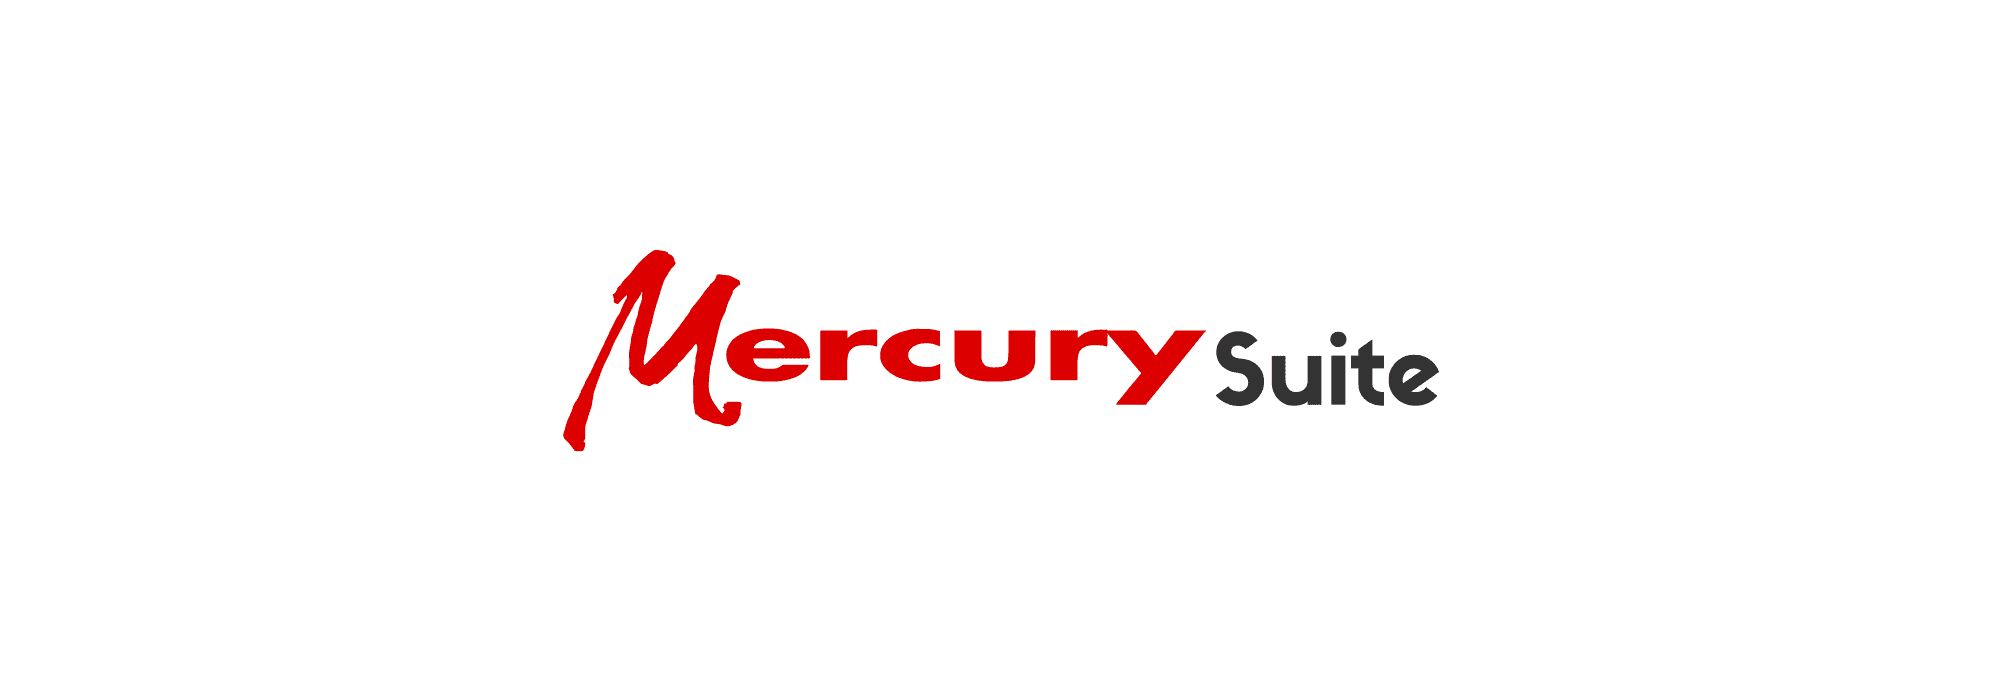 Anwenderberichte, Produktbeschreibungen und Inormationsmaterialeine für die docuFORM Mercury Suite